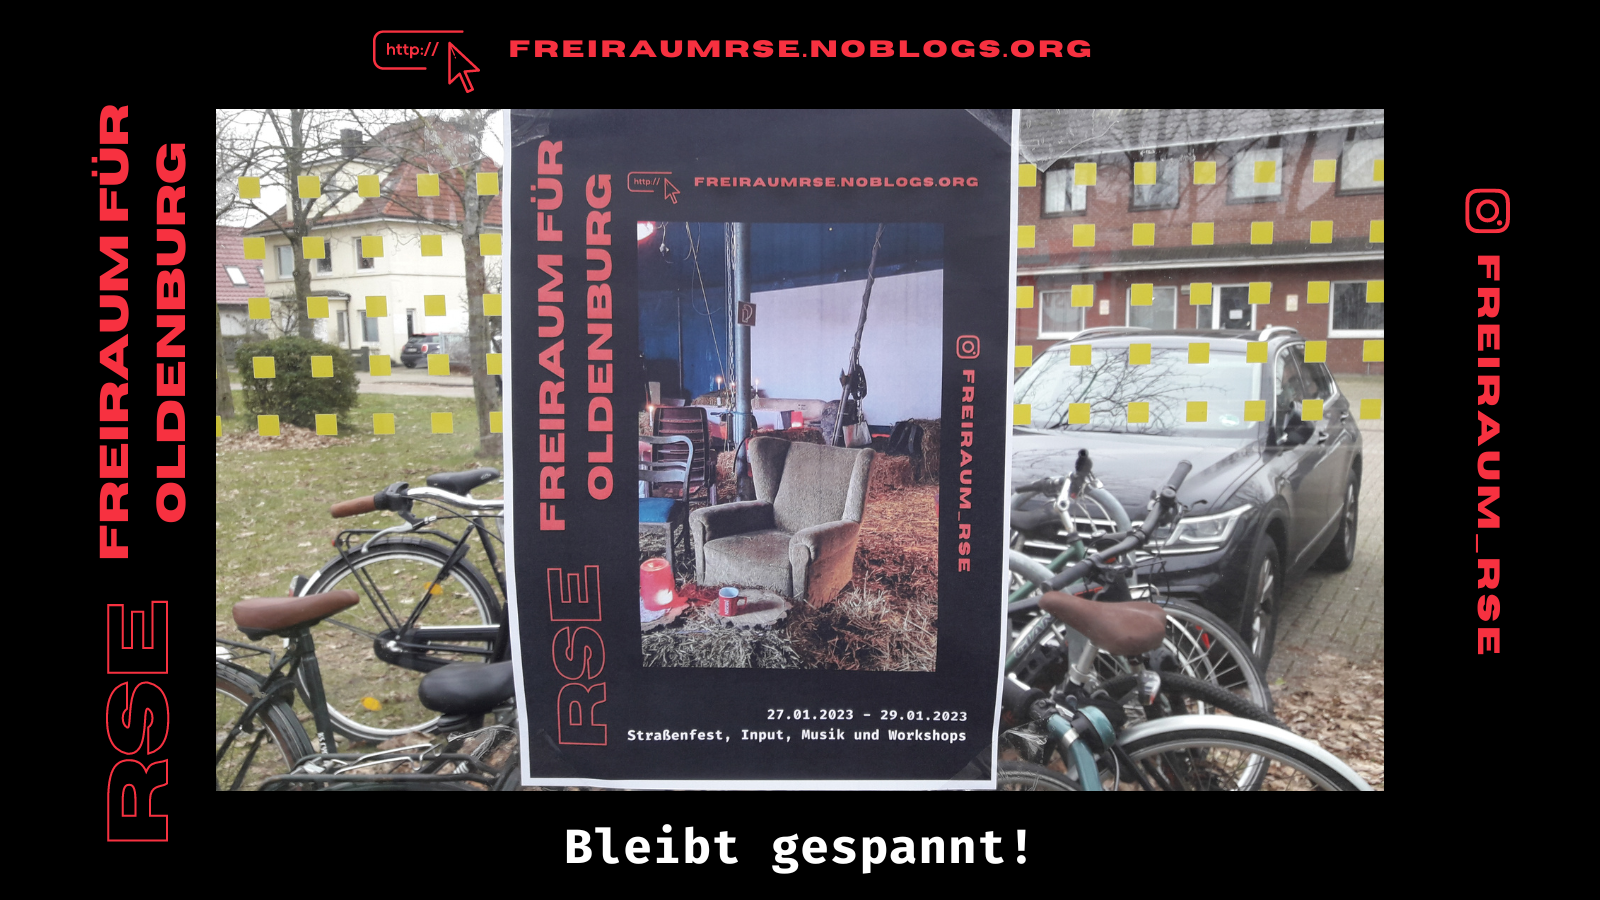 RSE Freiraum für Oldenburg Zu sehen ist ein Bild von unserem Plakat für unsere Veranstaltung vom 27.01.-29.01. in Oldenburg